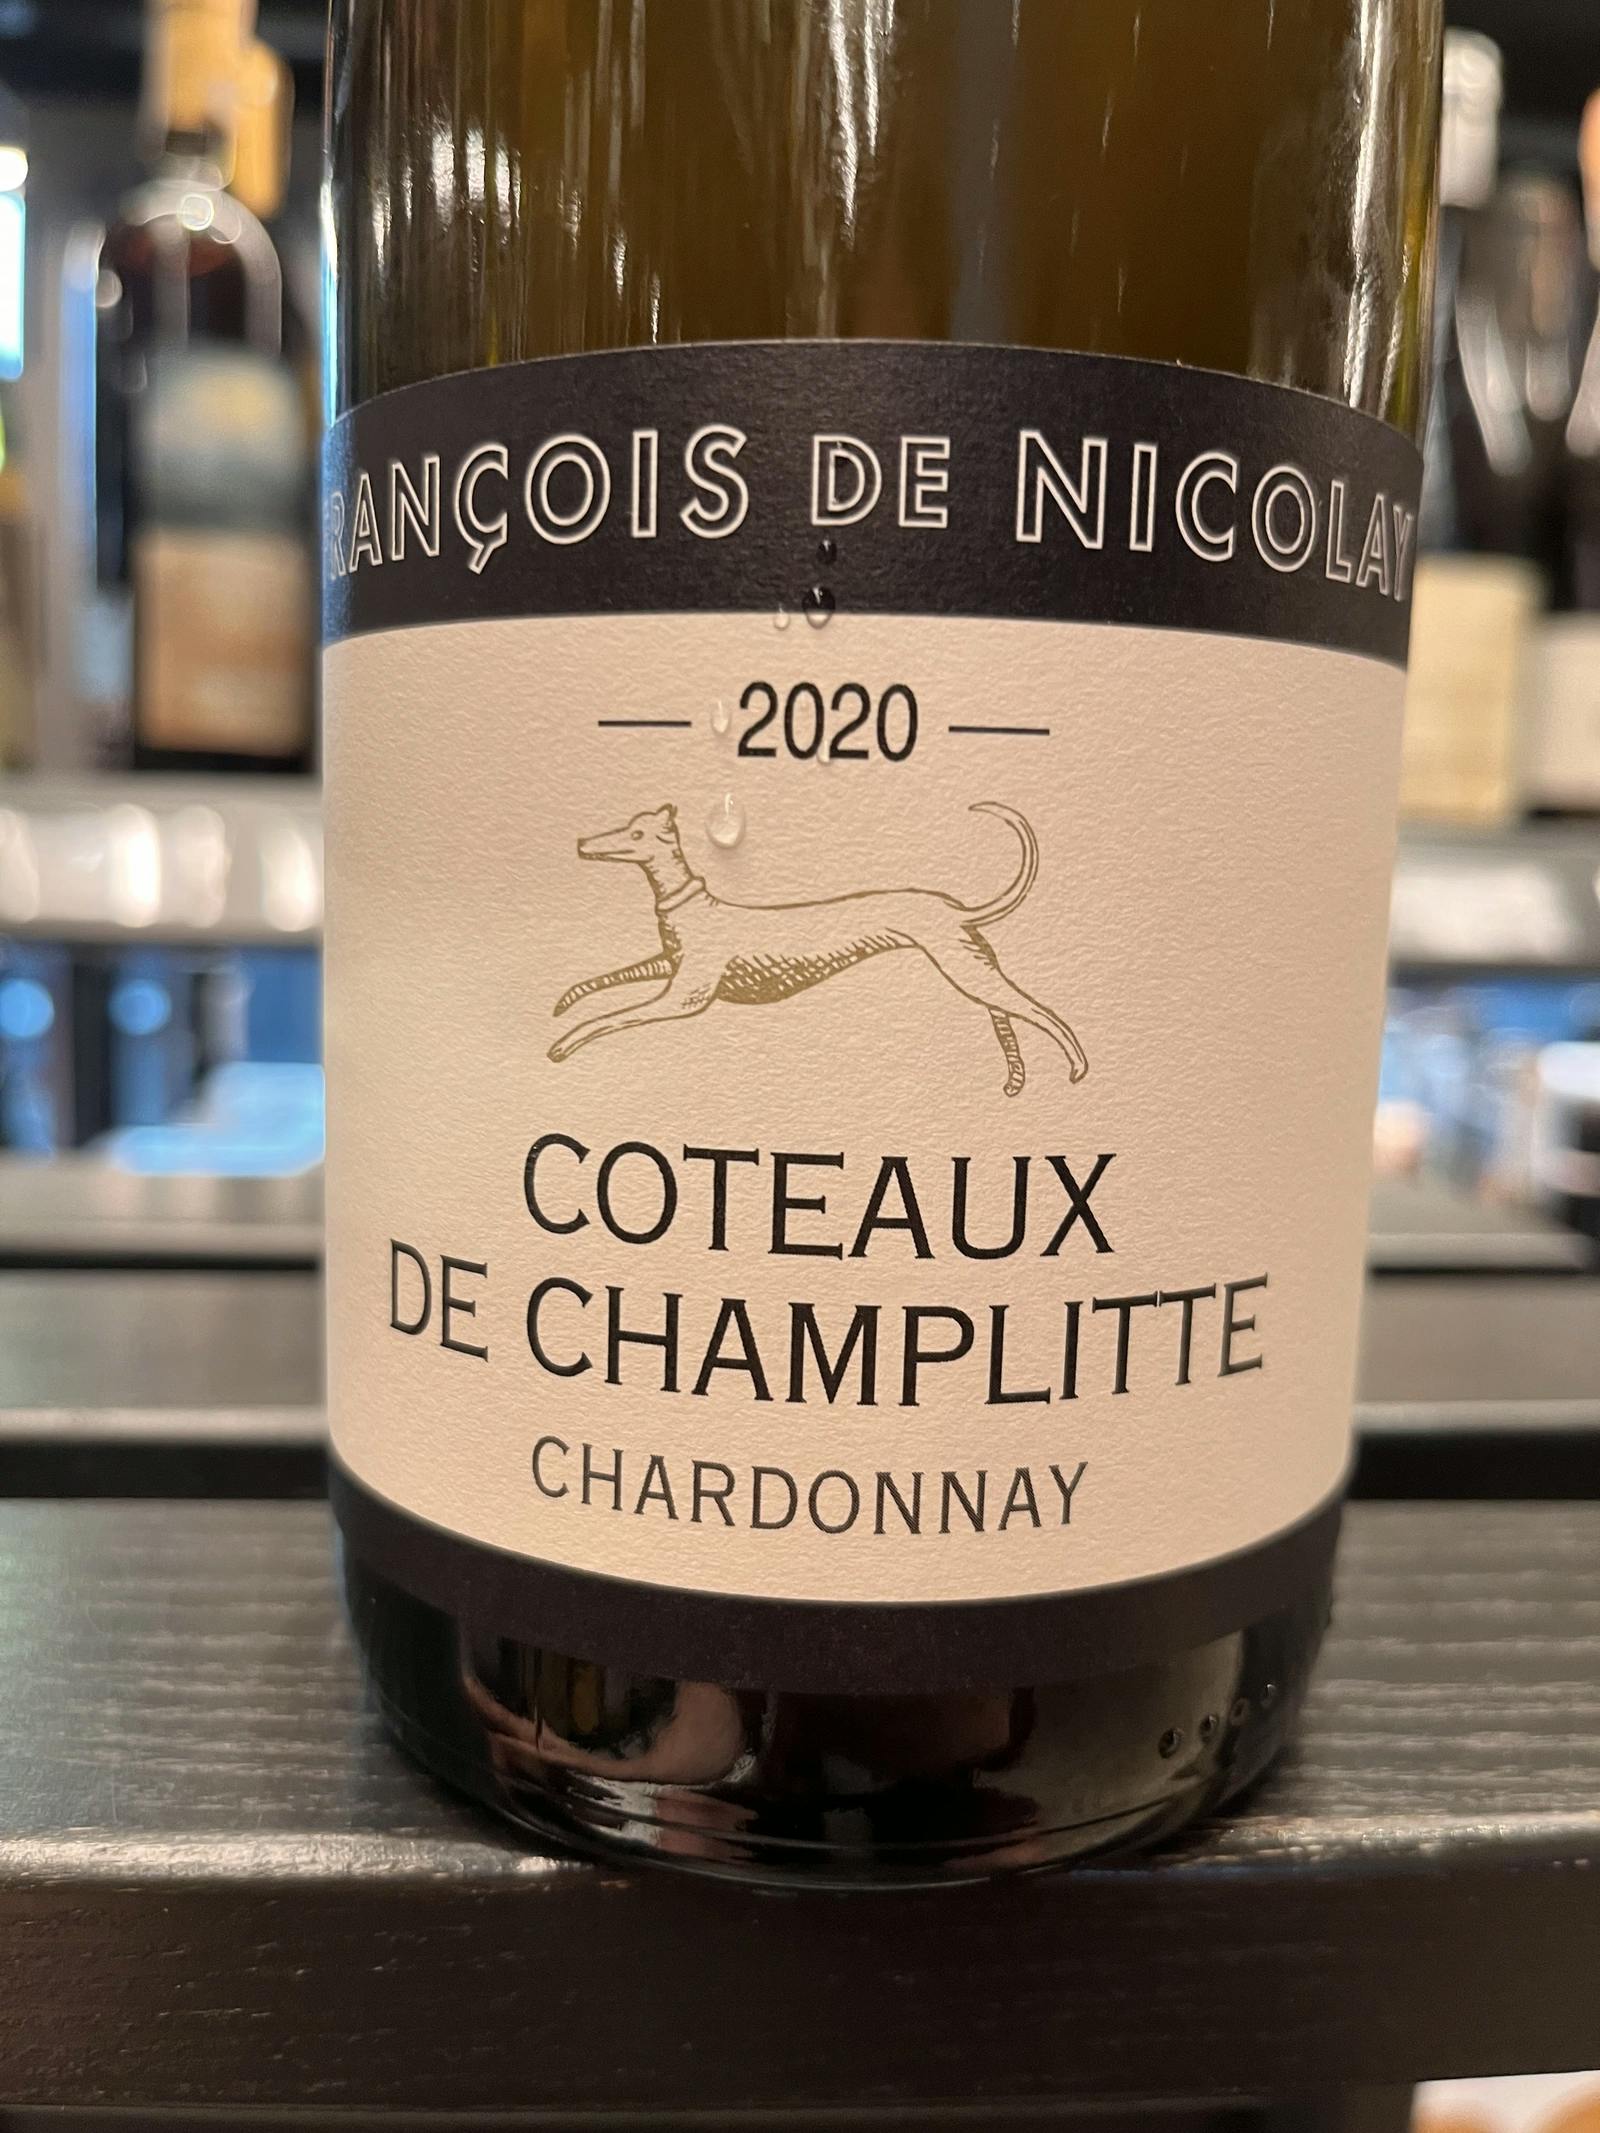 François de Nicolay Coteaux de Champlitte Chardonnay 2020